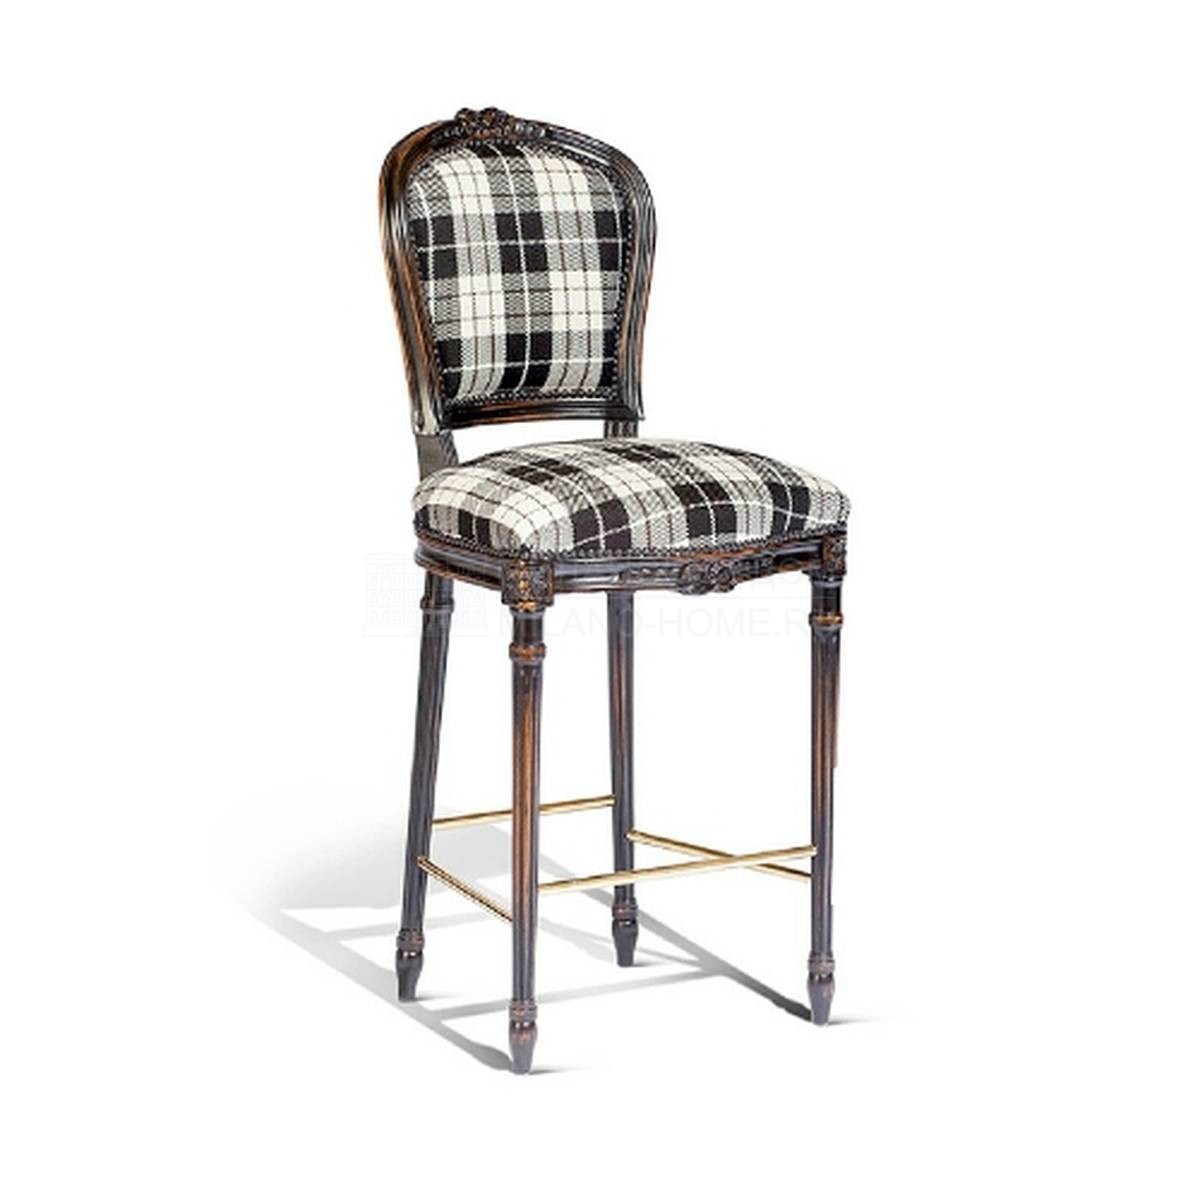 Барный стул art.8649 bar chair из Италии фабрики SALDA